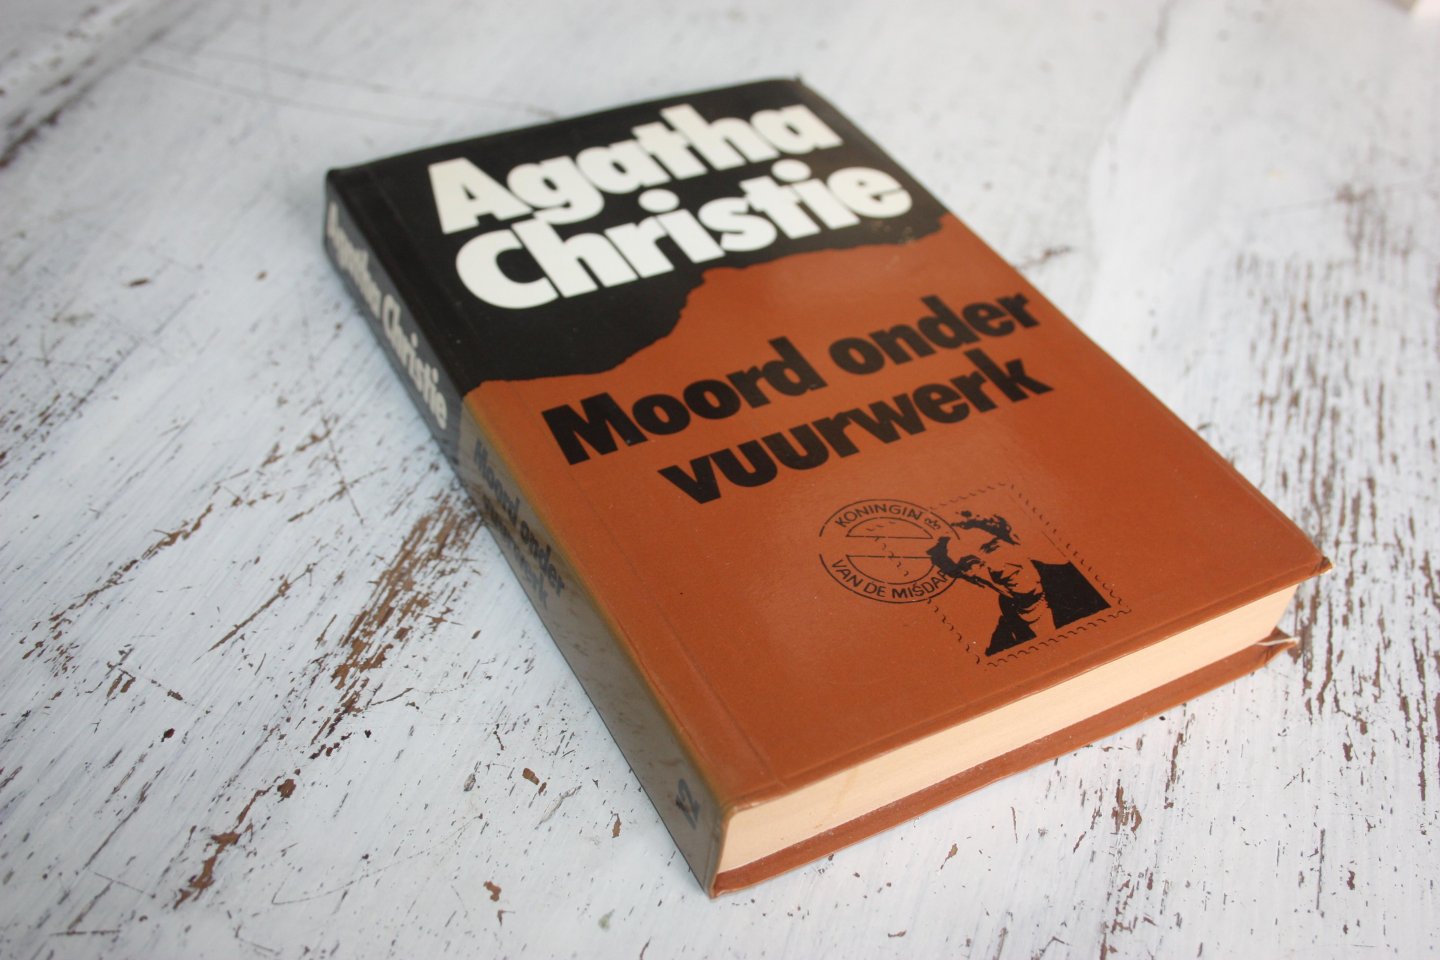 Christie, Agatha - Agatha Christie / MOORD ONDER VUURWERK